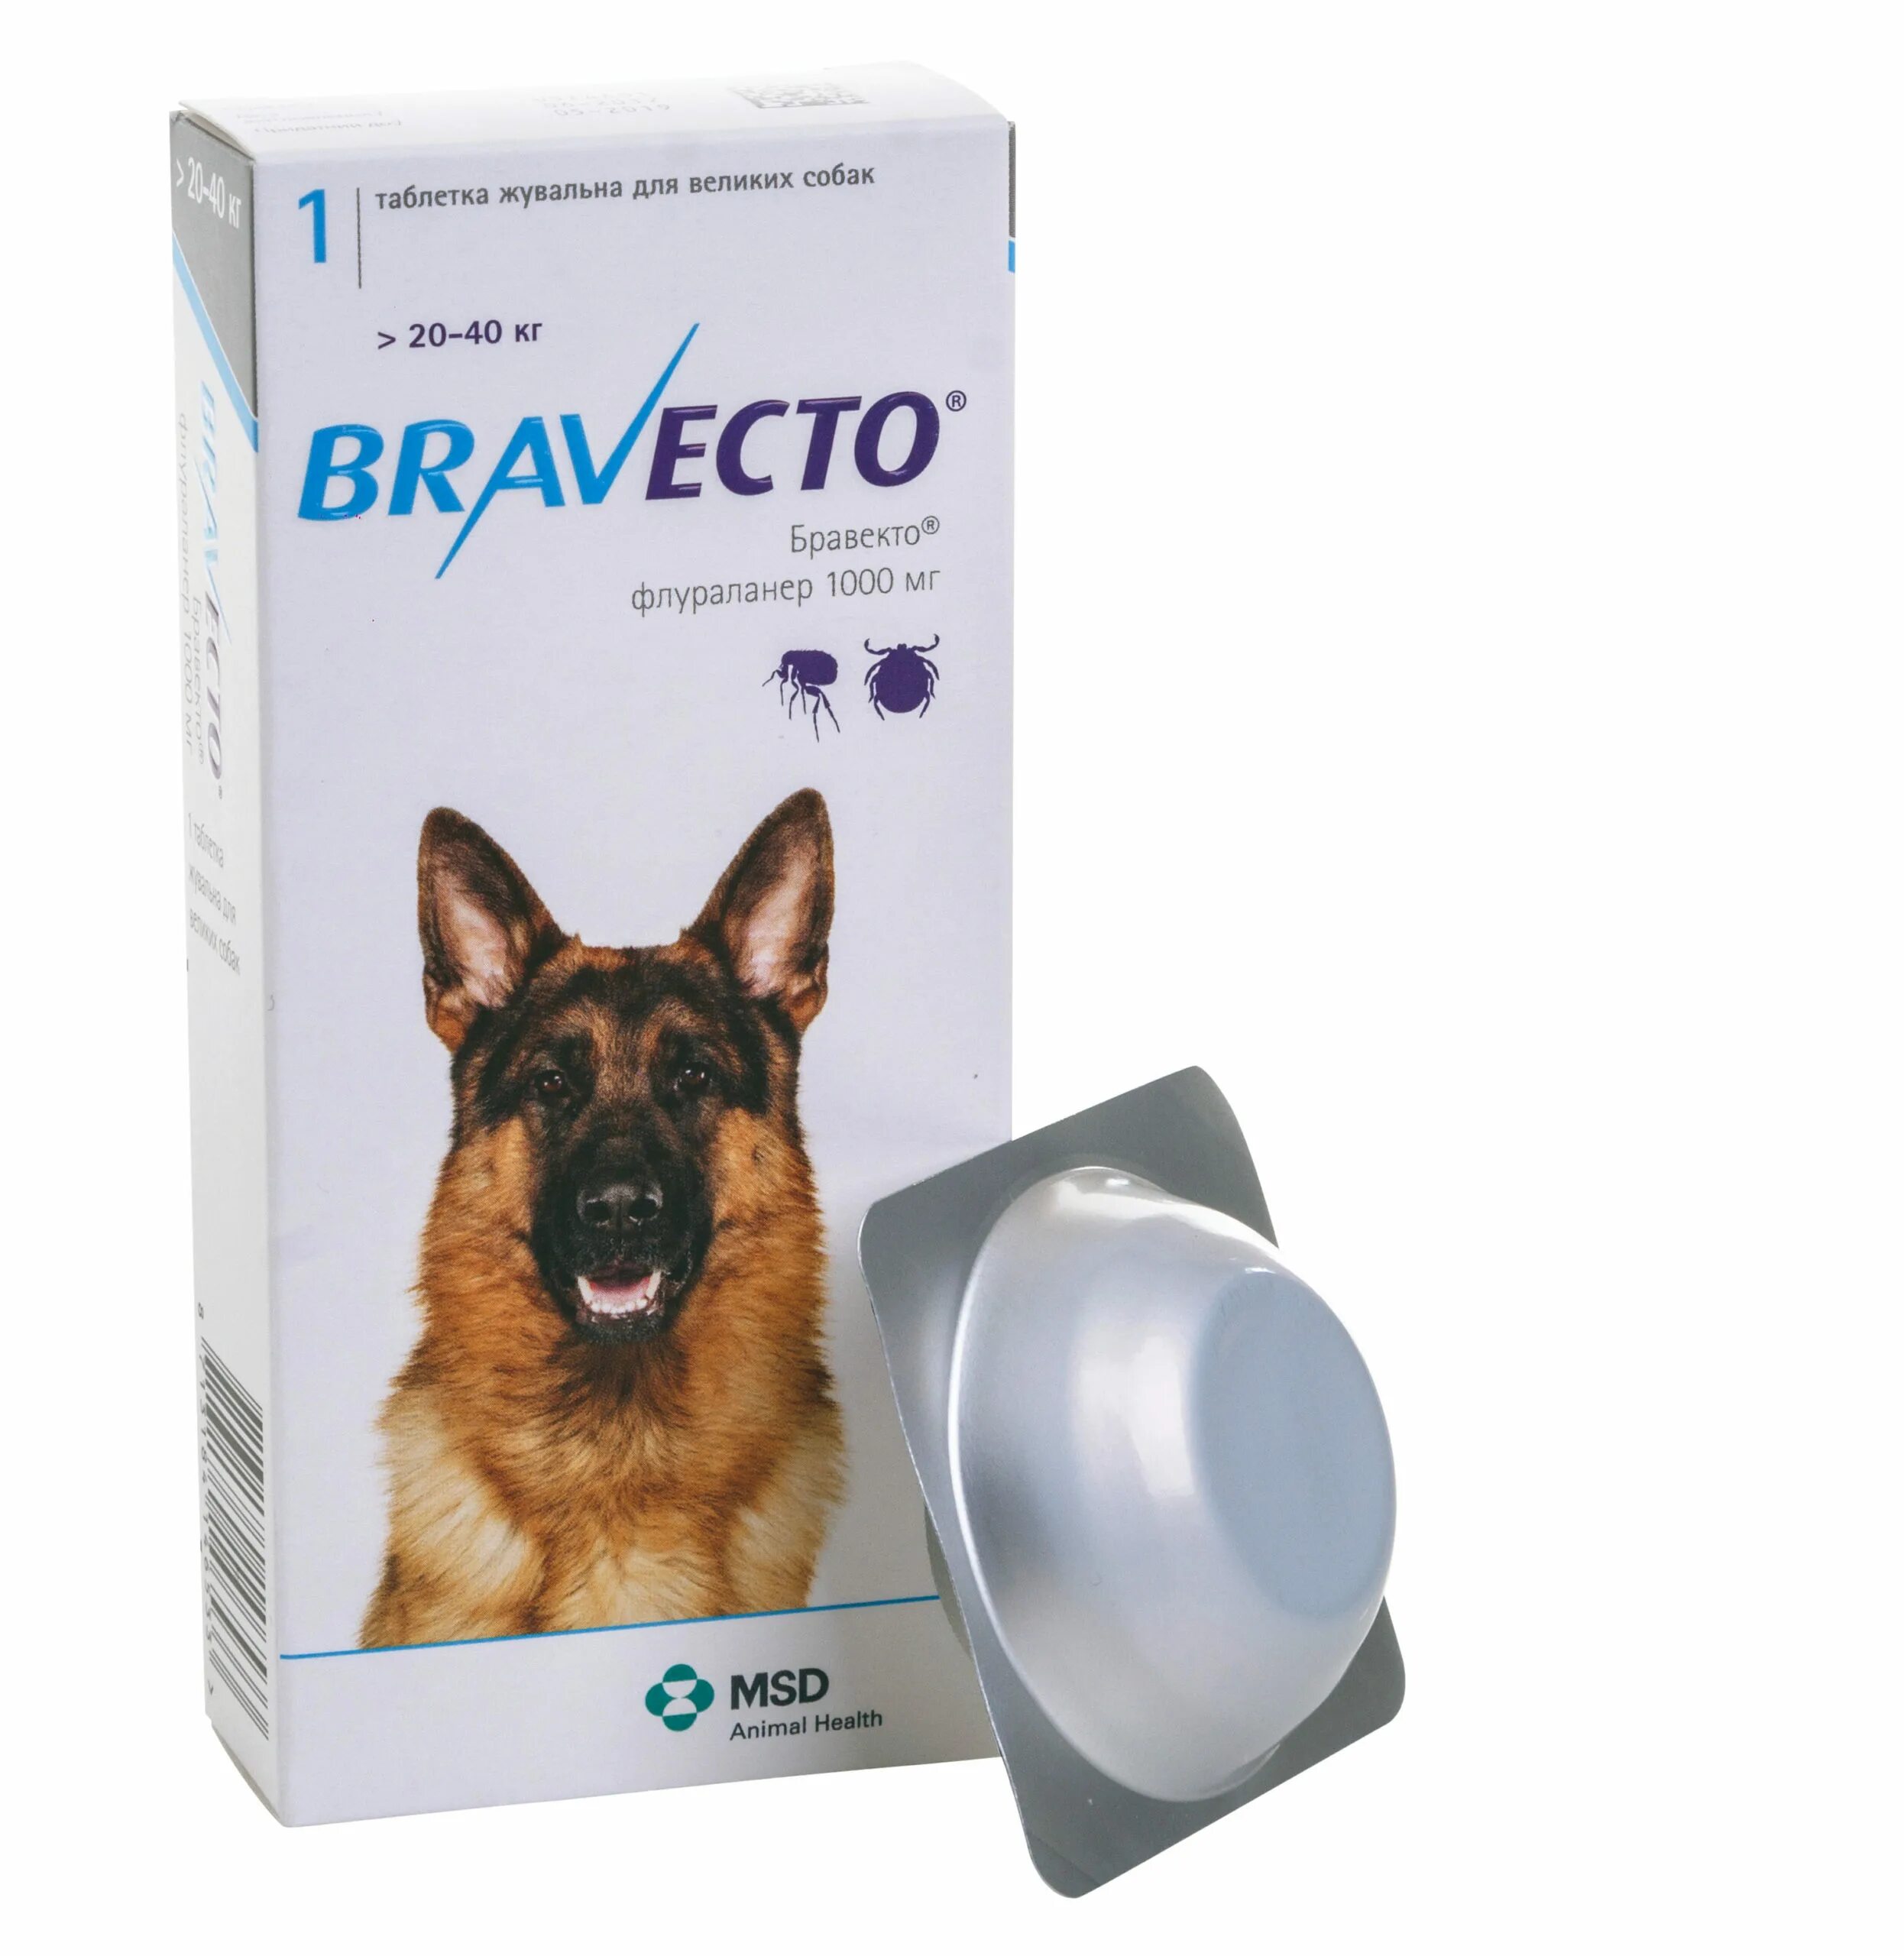 Таблетки от блох и клещей для собак Бравекто. Бравекто для собак 20-40 кг таблетки. Бравекто (Bravecto) 20-40 кг, таблетка 1000 мг. Бравекто 112.5 мг Флураланер.